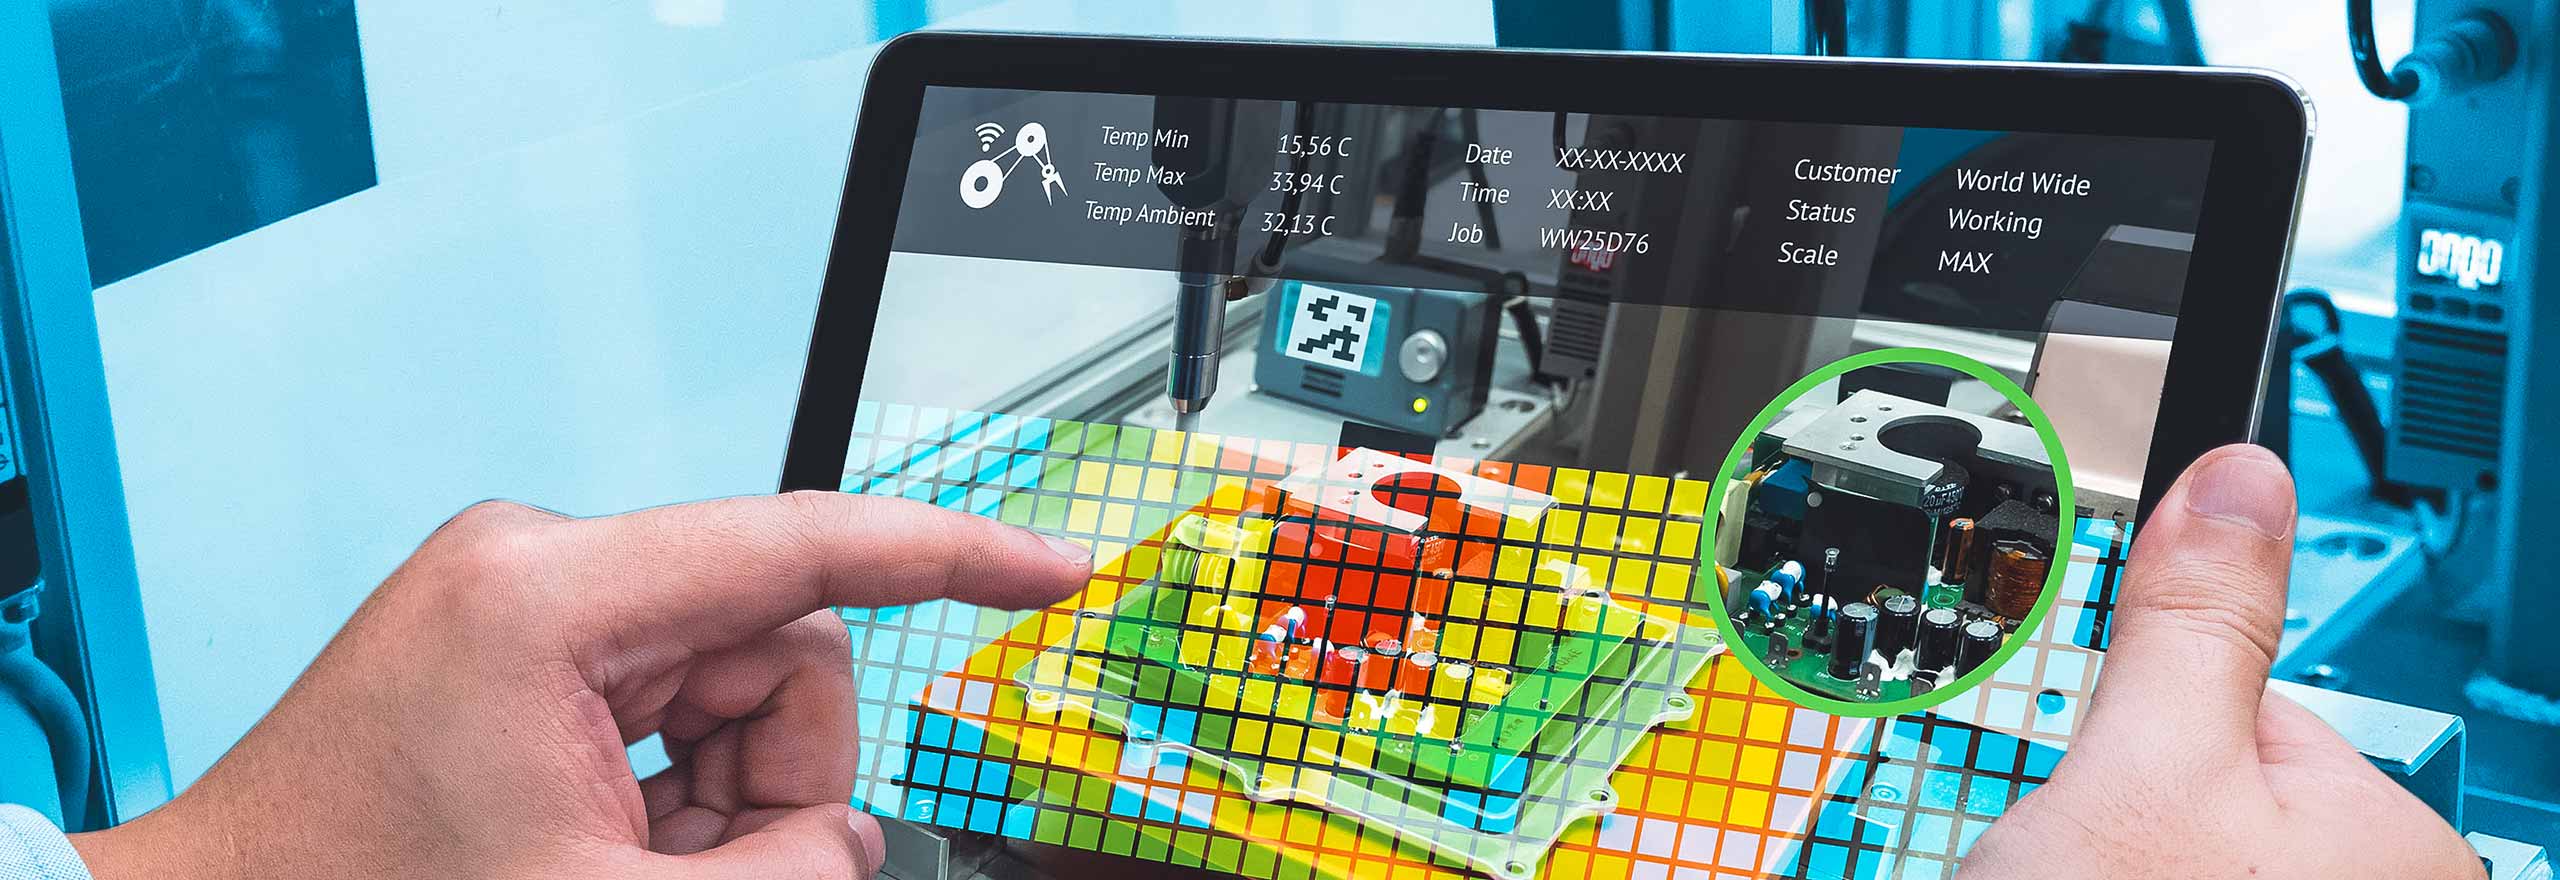 Image représentant le personnel de l’usine de fabrication avec image de la réalité augmentée sur une tablette